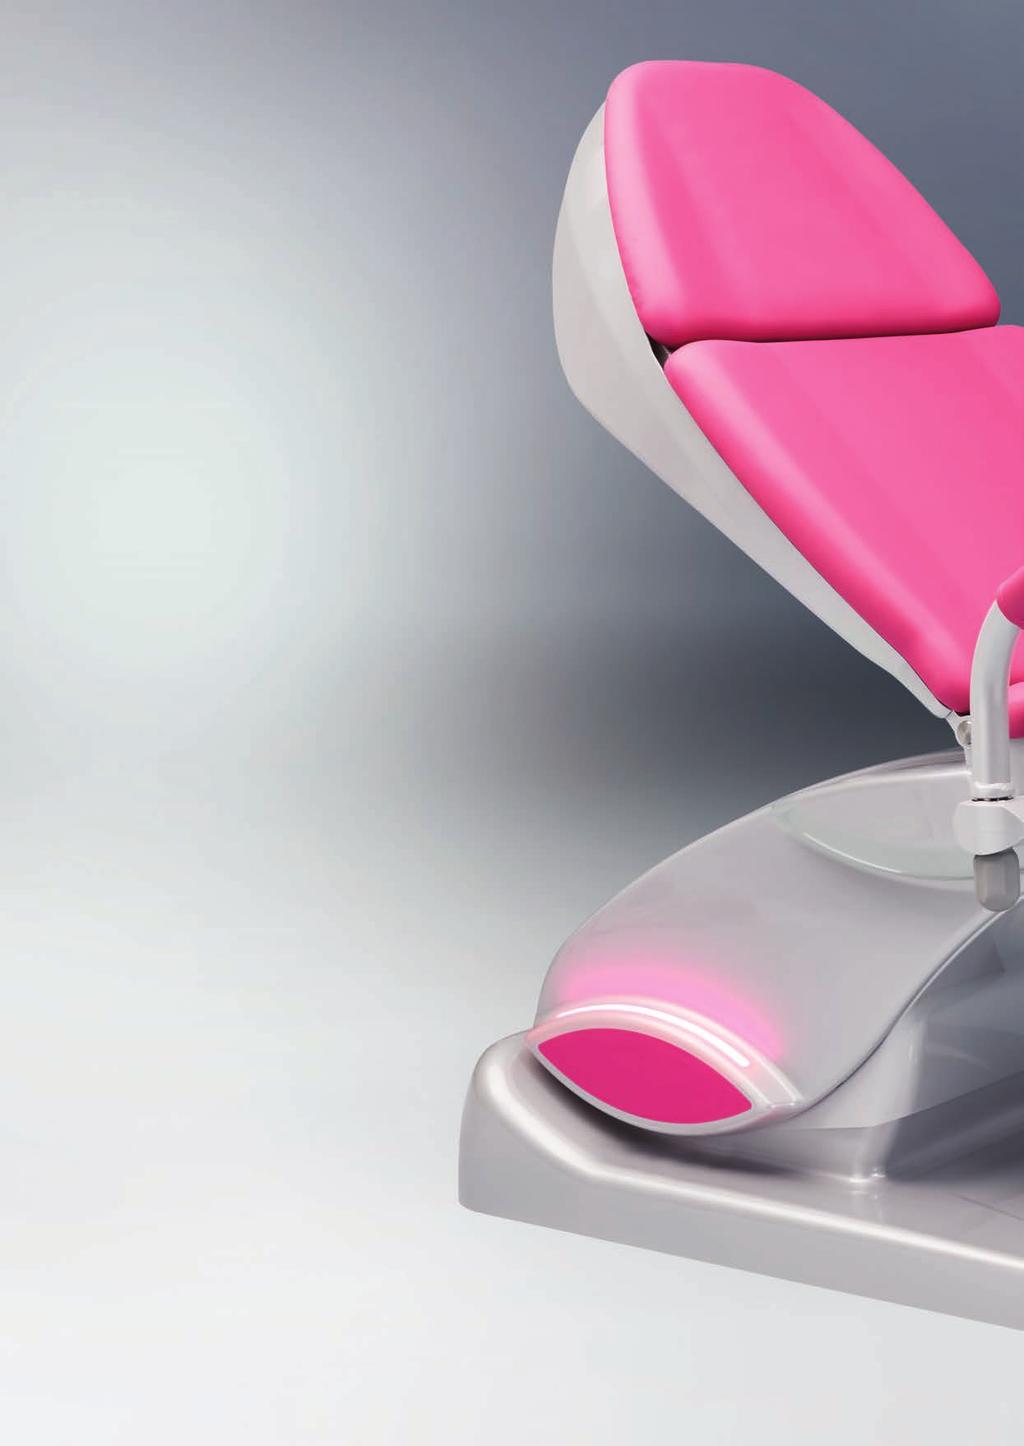 arco-matic Uso optimizado, más comodidad, diseño de primera clase Los sillones de reconocimiento ginecológico de la nueva gama arco-matic combina un diseño sobresaliente con la tecnología más moderna